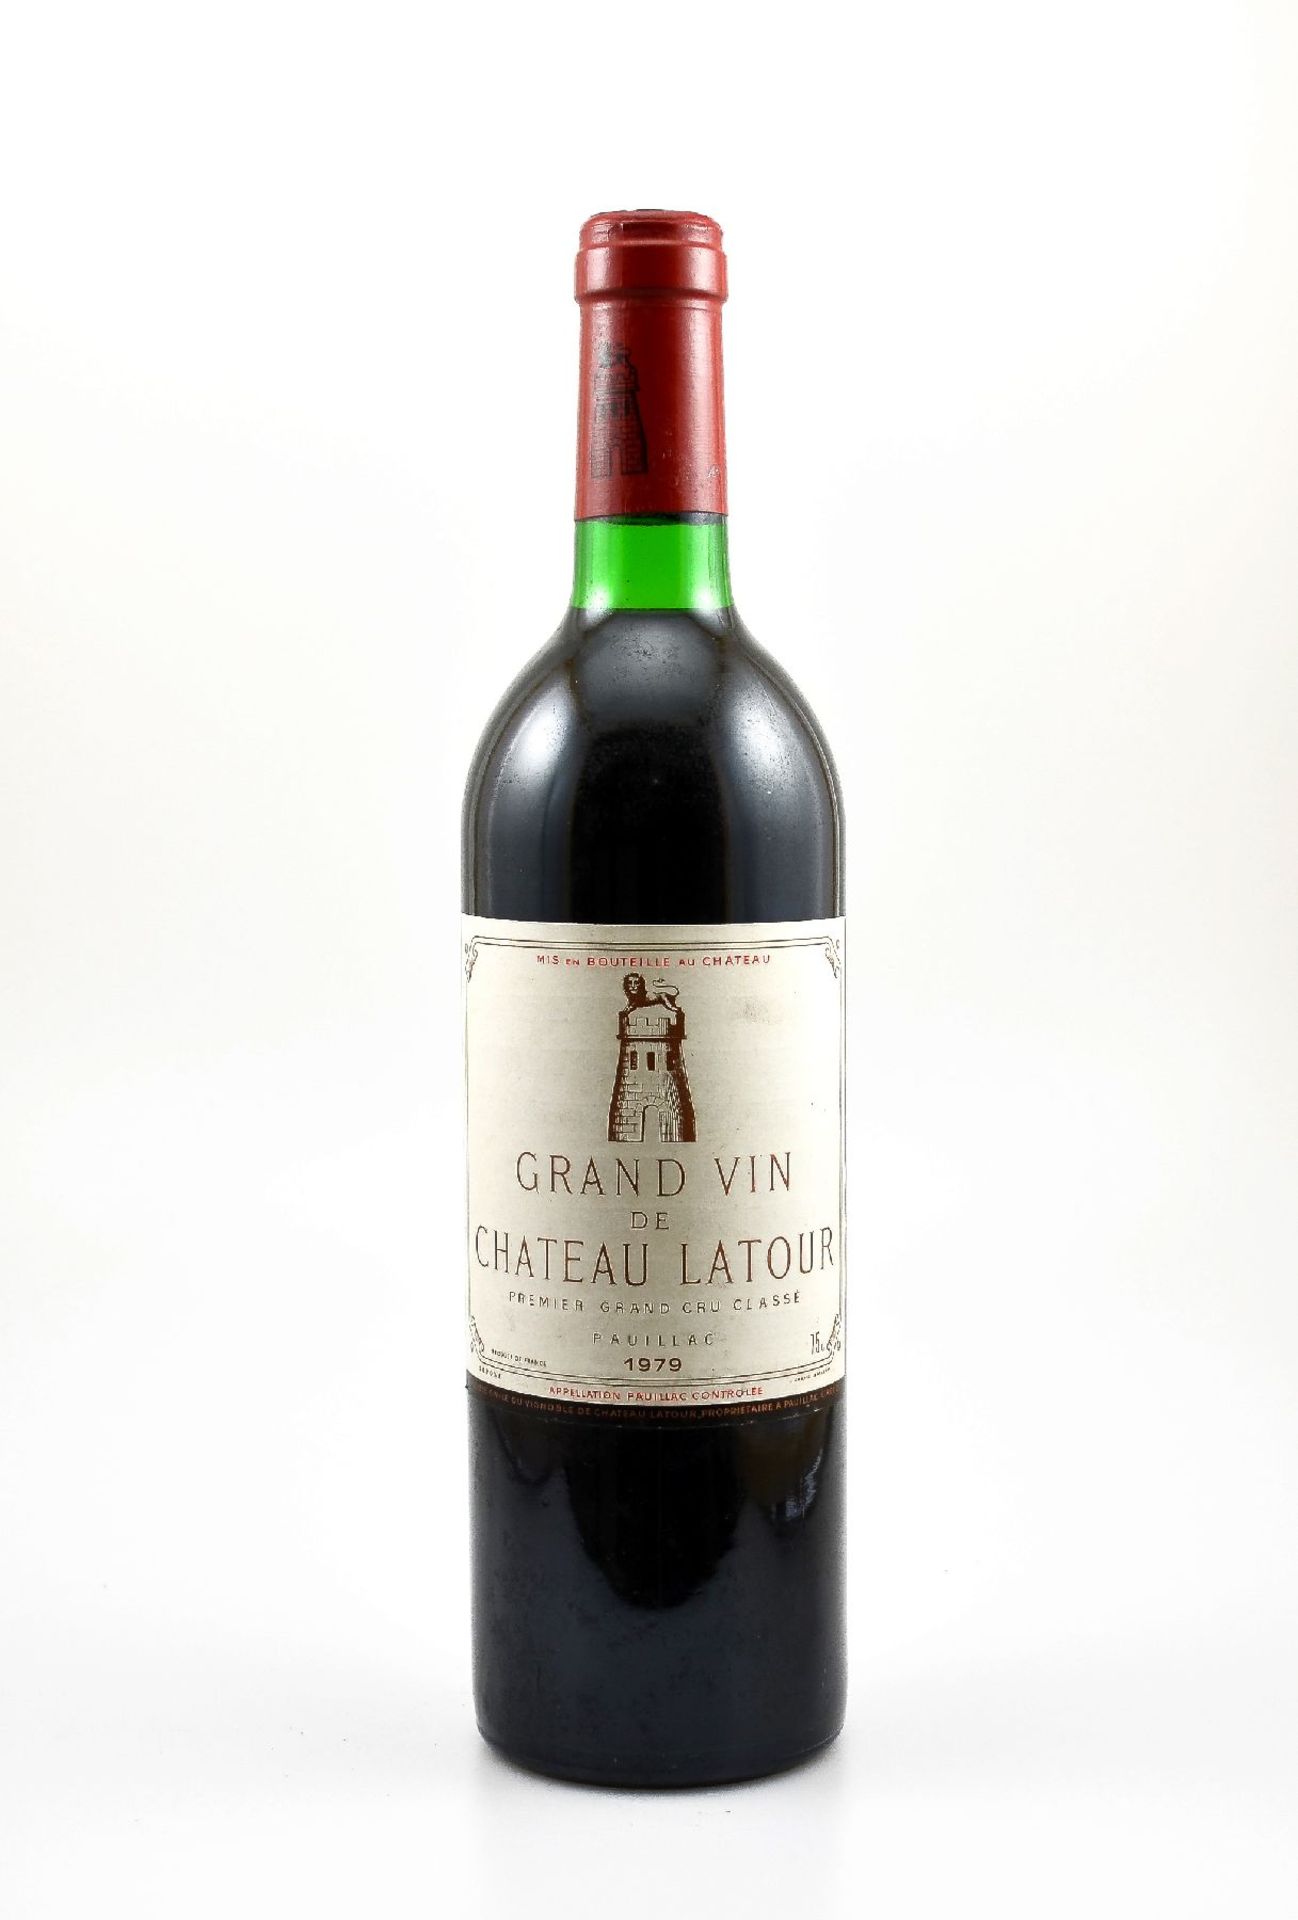 1 bottle 1979 Chateau Latour, Pauillac, Premier Grand Cru Classe, approx 75 cl, filling level: